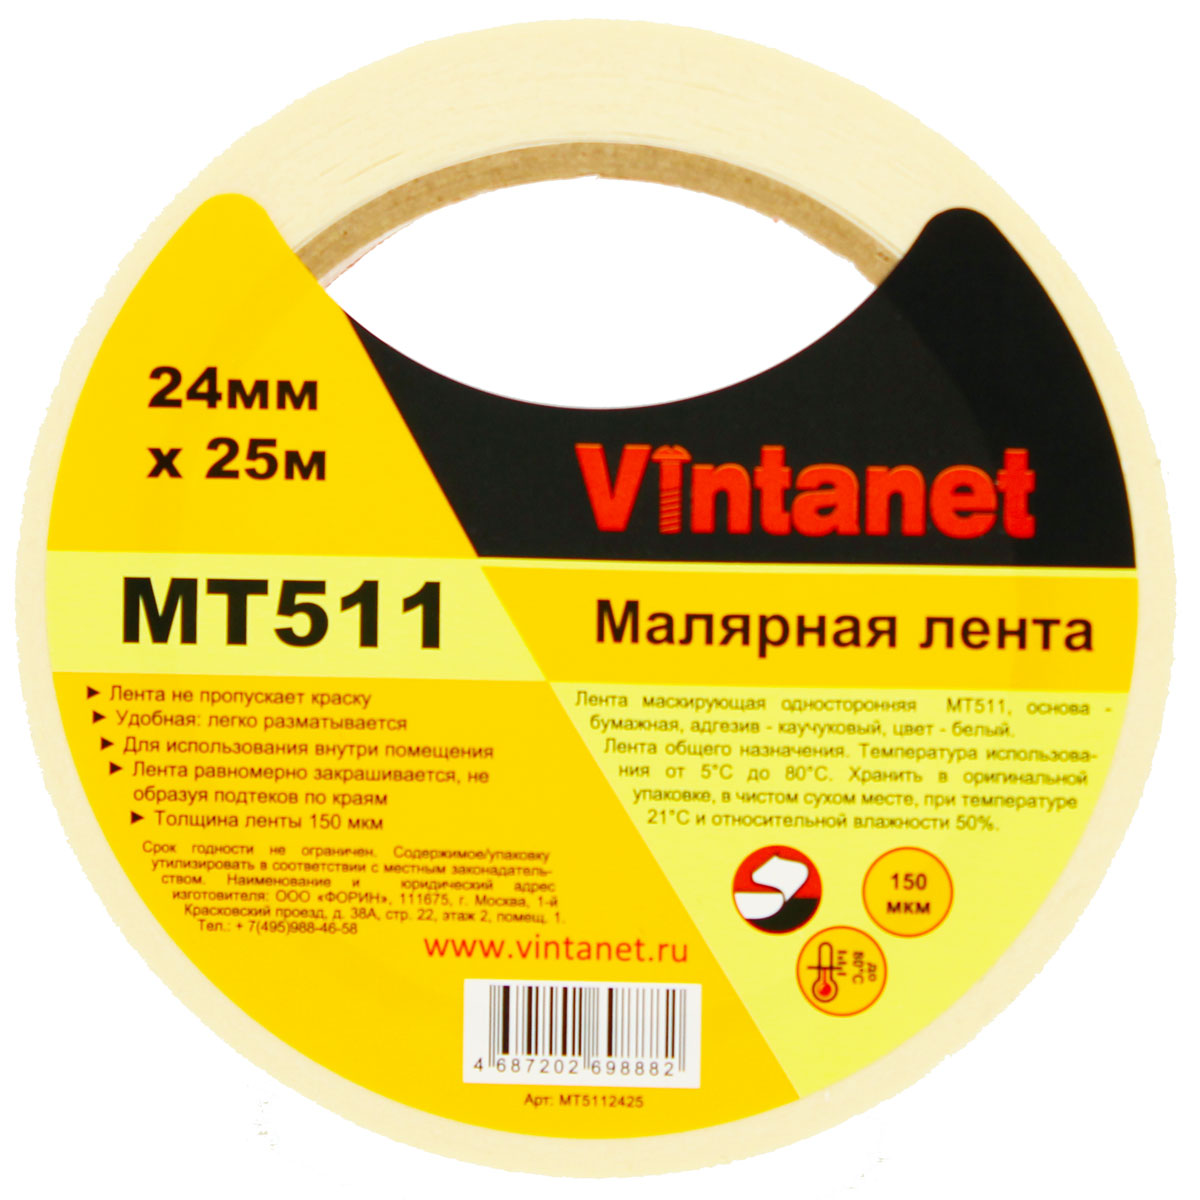 Лента малярная универсальная Vintanet MT511, 80 С, 150 мкм, 24мм х 25м, MT5112425 бумажная малярная лента klebebander